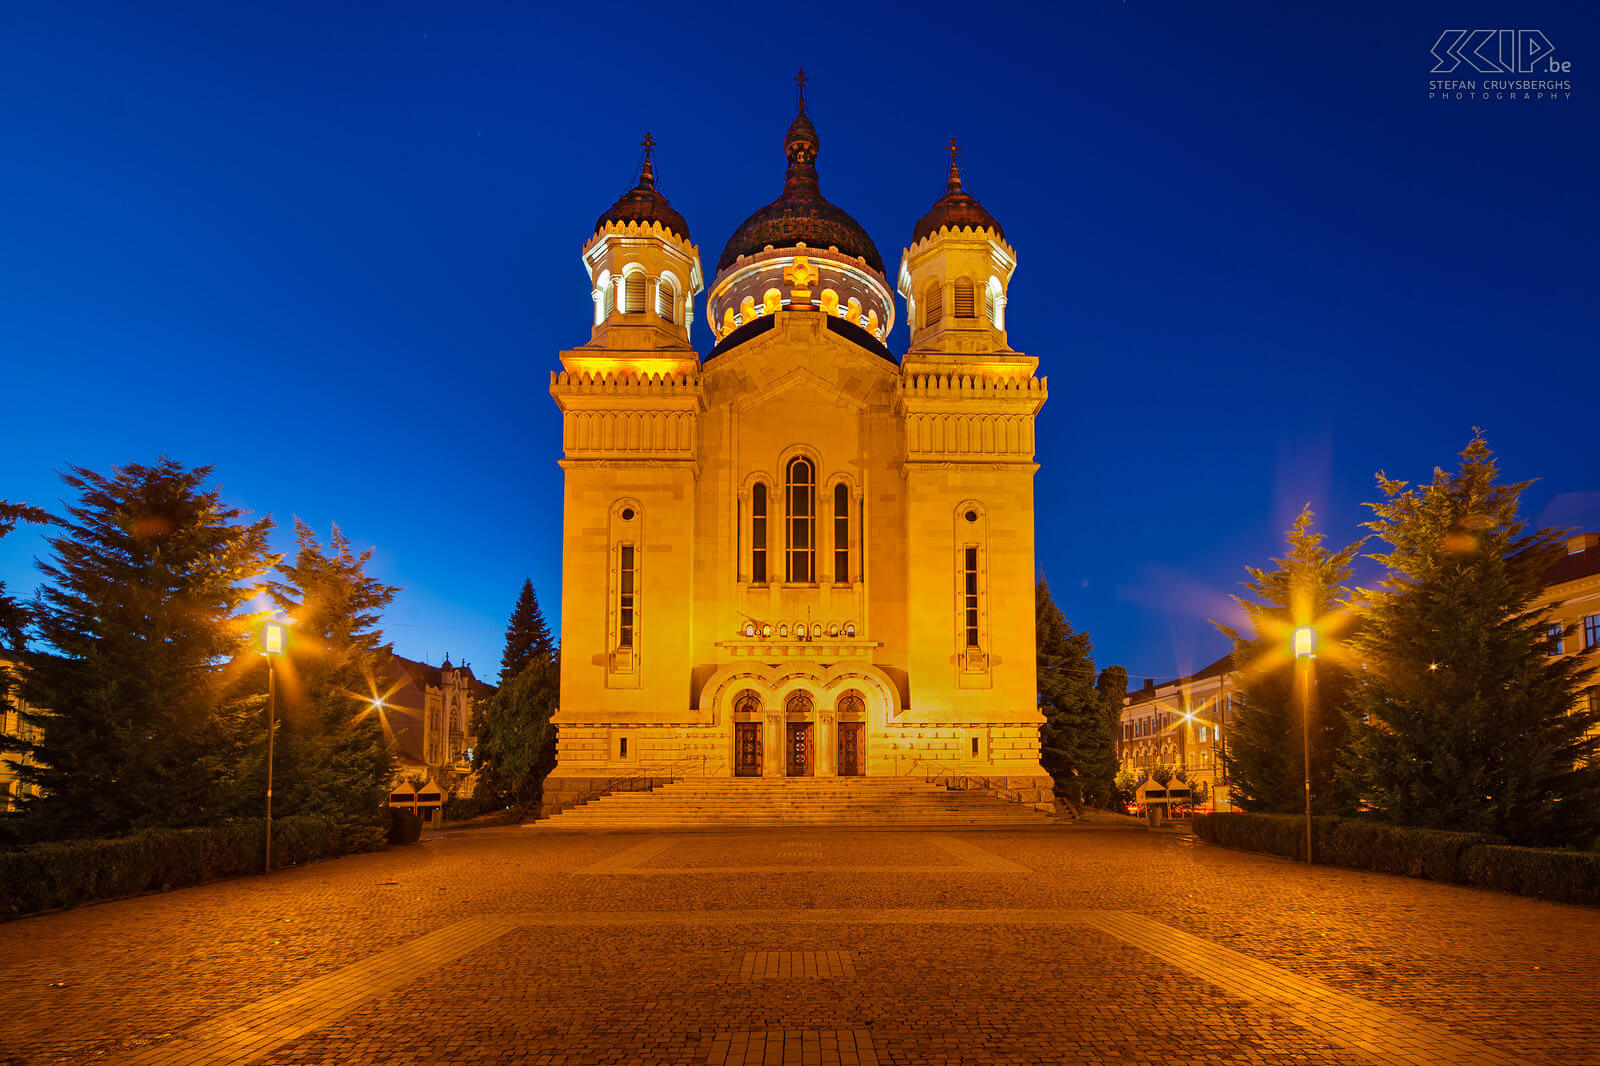 Cluj-Napoca - Orthodoxe kerk De Dormition van de Theotokos-kathedraal (Roemeens: Catedrala Adormirea Maicii Domnului) is de beroemdste Roemeens-orthodoxe kerk van Cluj-Napoca. De kerk werd gebouwd tussen 1923 en 1933. Stefan Cruysberghs